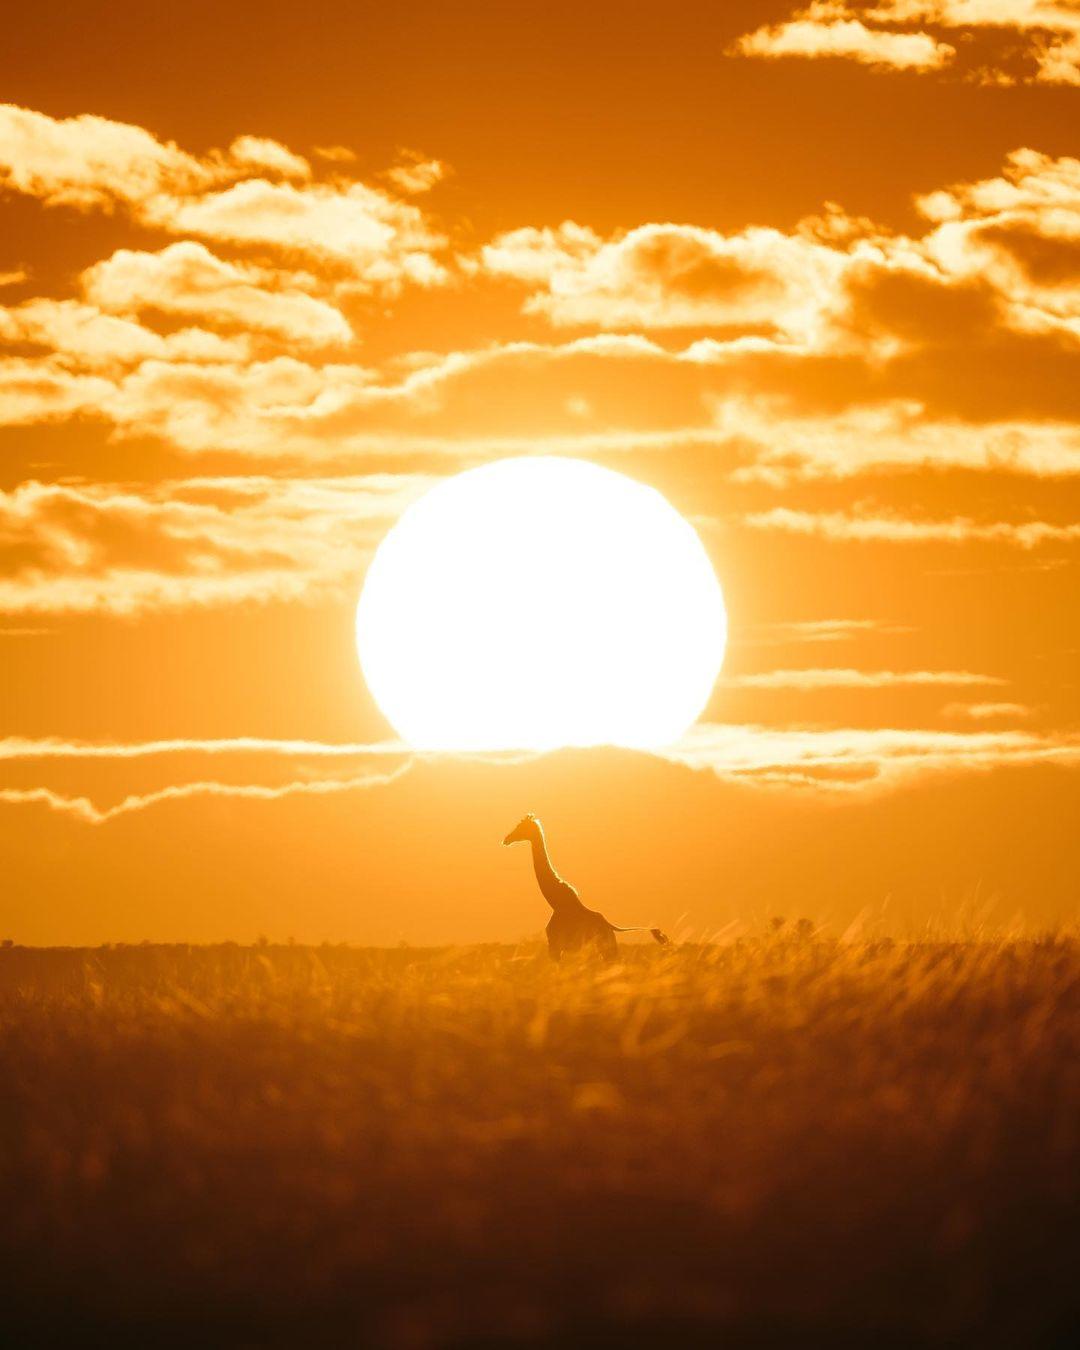  晨光中的长颈鹿，Emmett Sparling摄于肯尼亚马赛马拉国家保护区。 